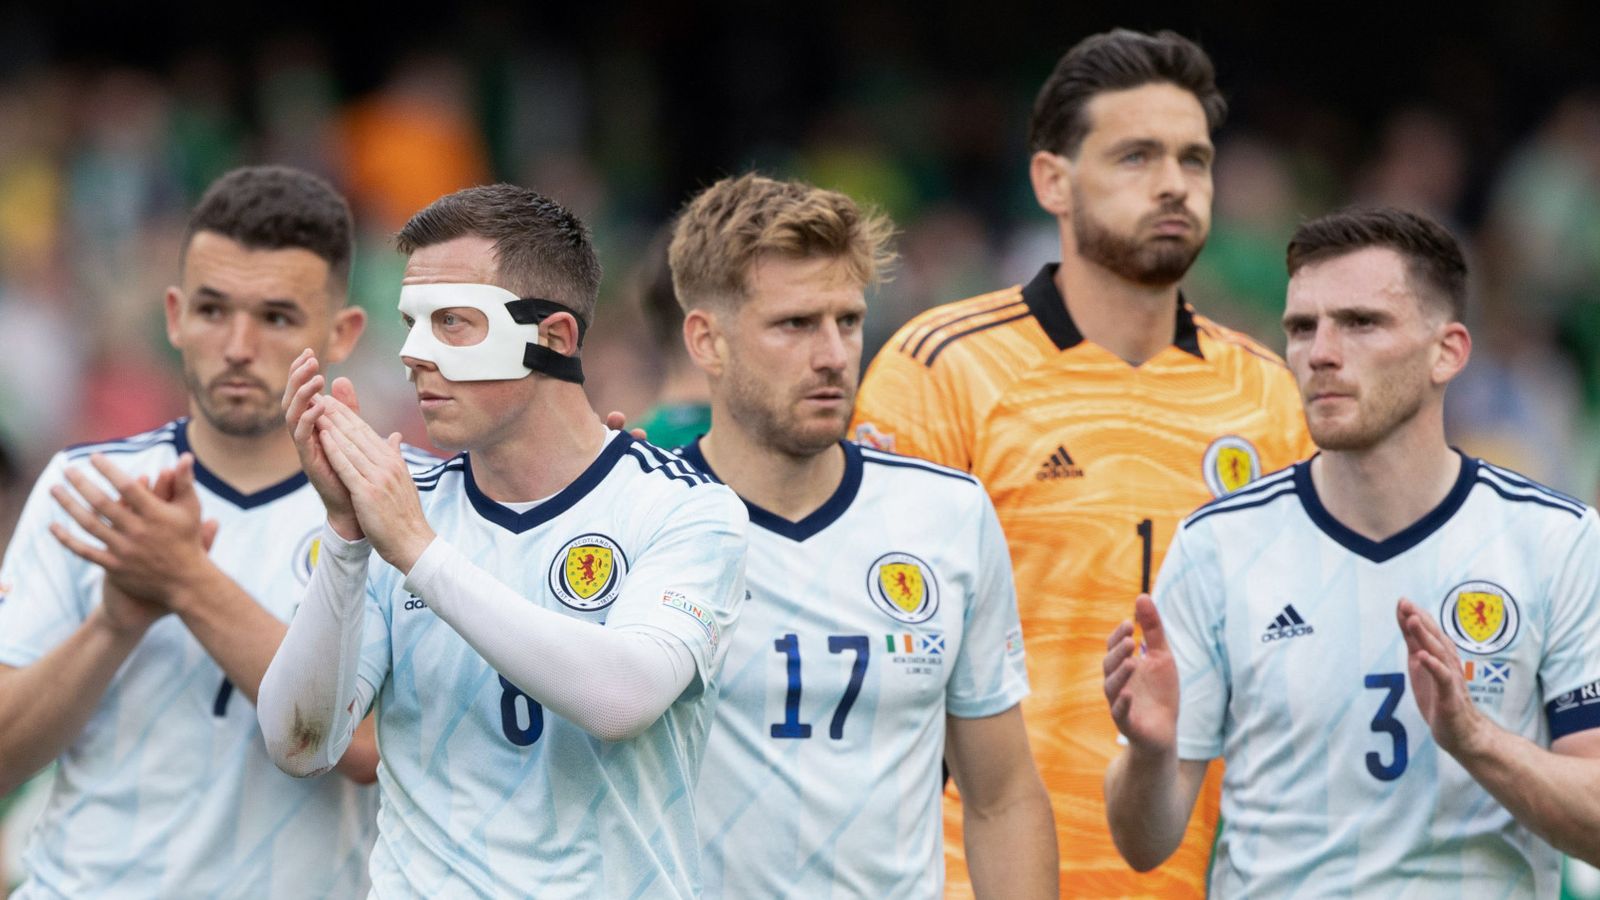 Szkocja: Steve Clarke przyznaje, że porażka Irlandii była „drapieżnikiem”, ponieważ akceptuje nadchodzącą krytykę |  wiadomości piłkarskie